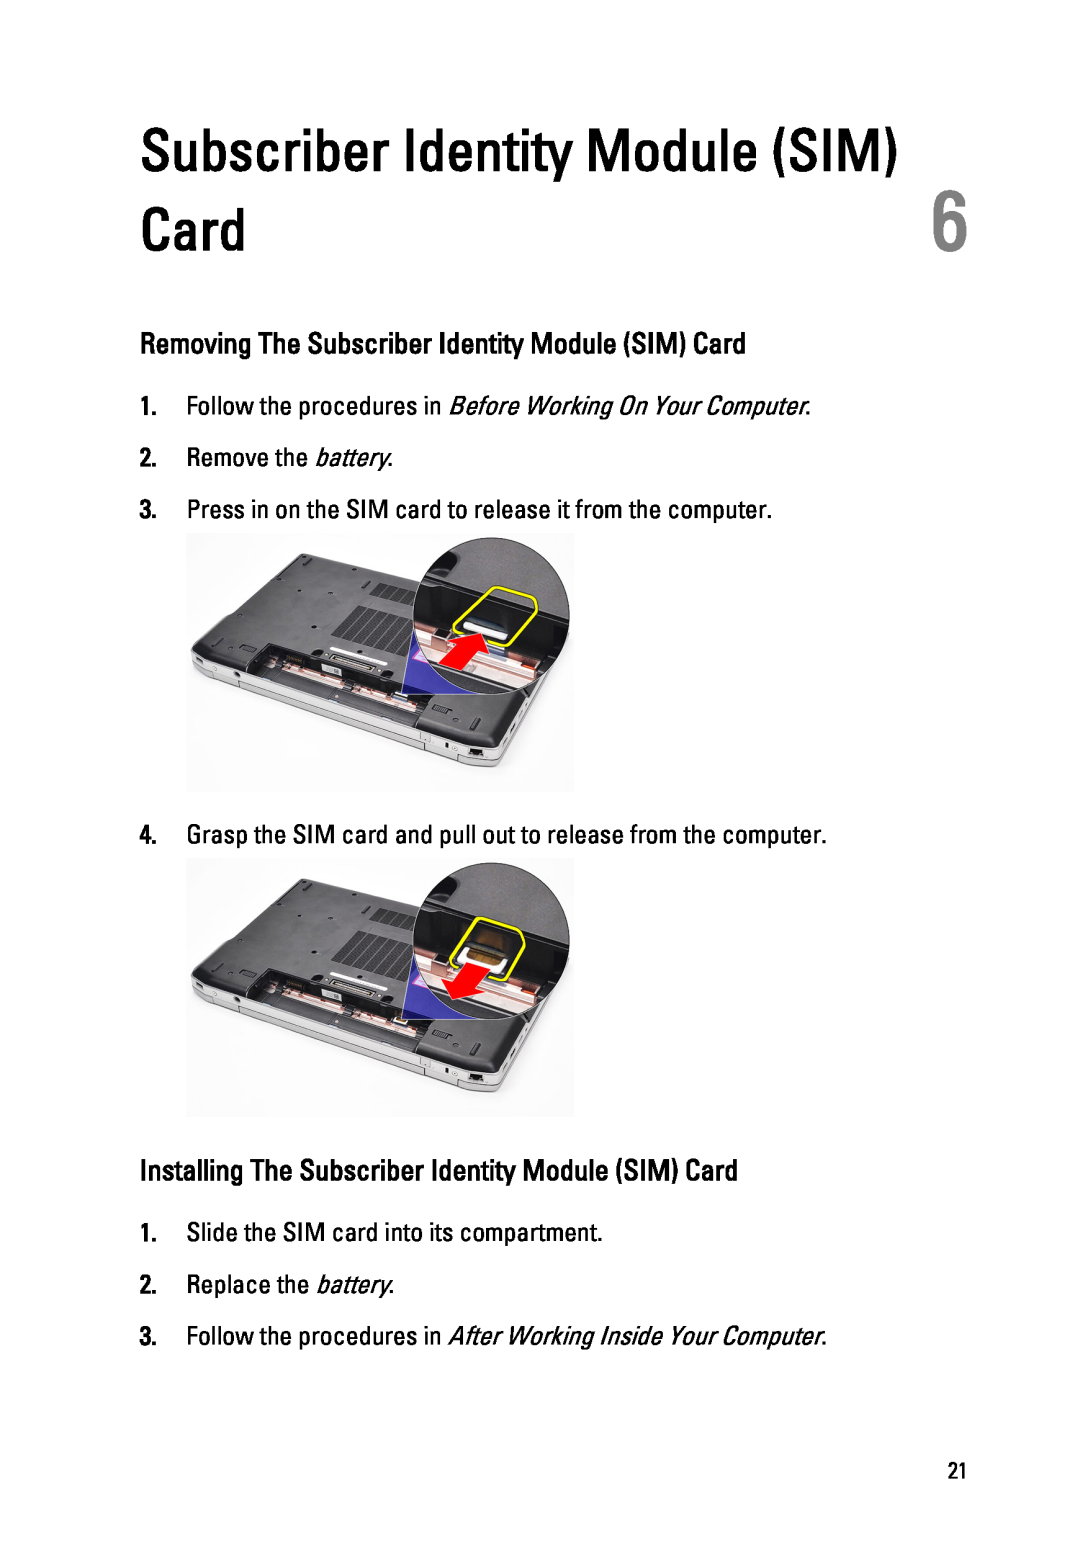 Dell E6520 Removing The Subscriber Identity Module SIM Card, Installing The Subscriber Identity Module SIM Card 